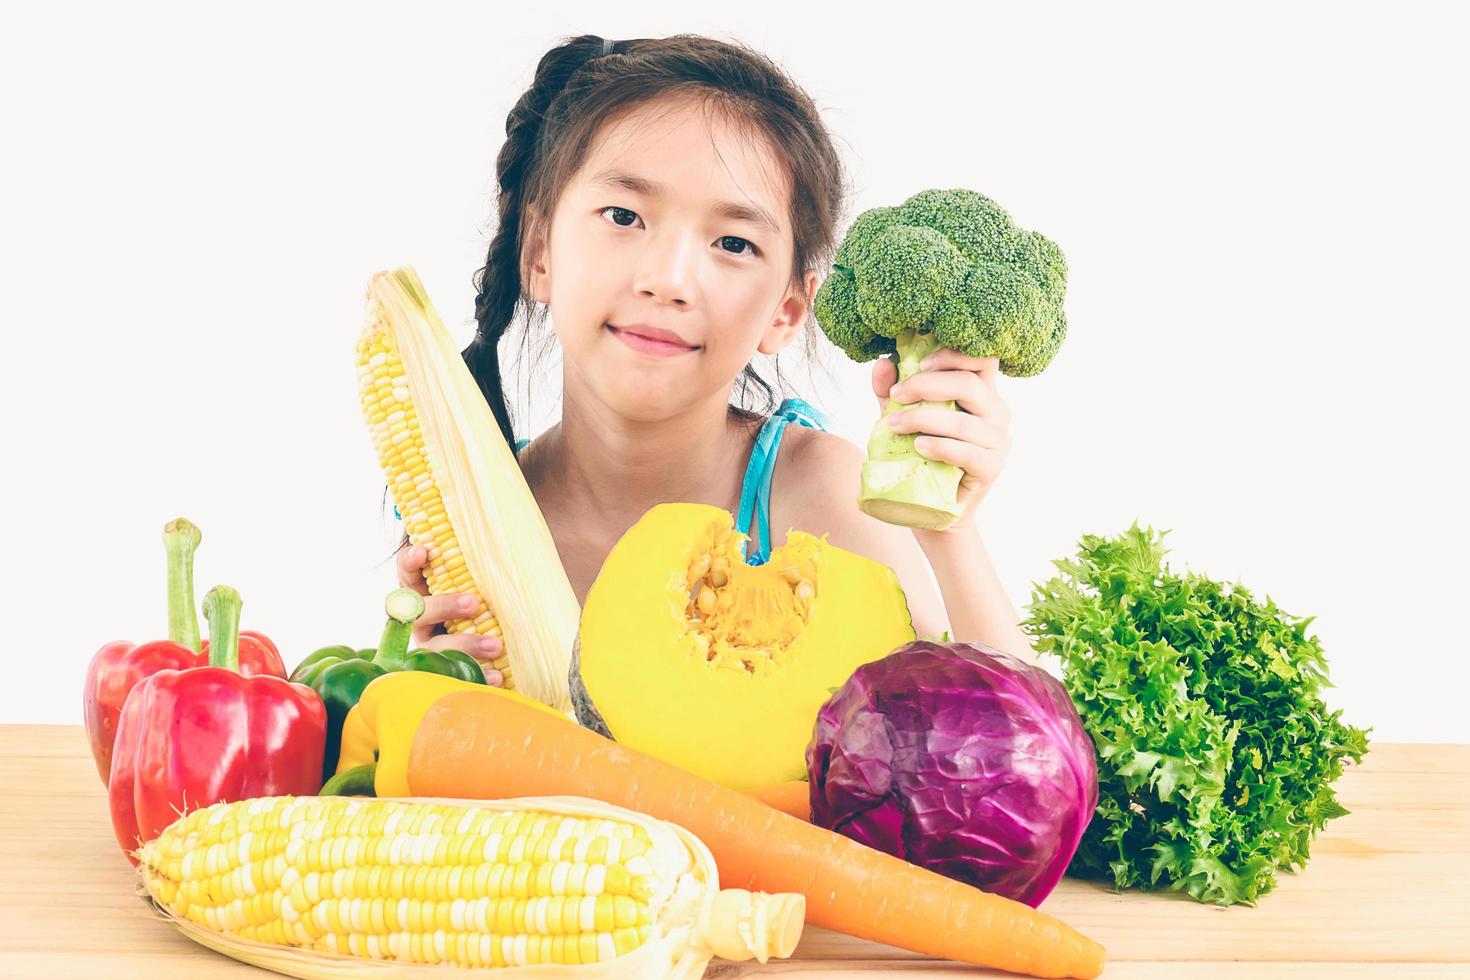 foto in stile vintage di bella ragazza asiatica che mostra godere dell'espressione con verdure fresche colorate isolate su sfondo bianco